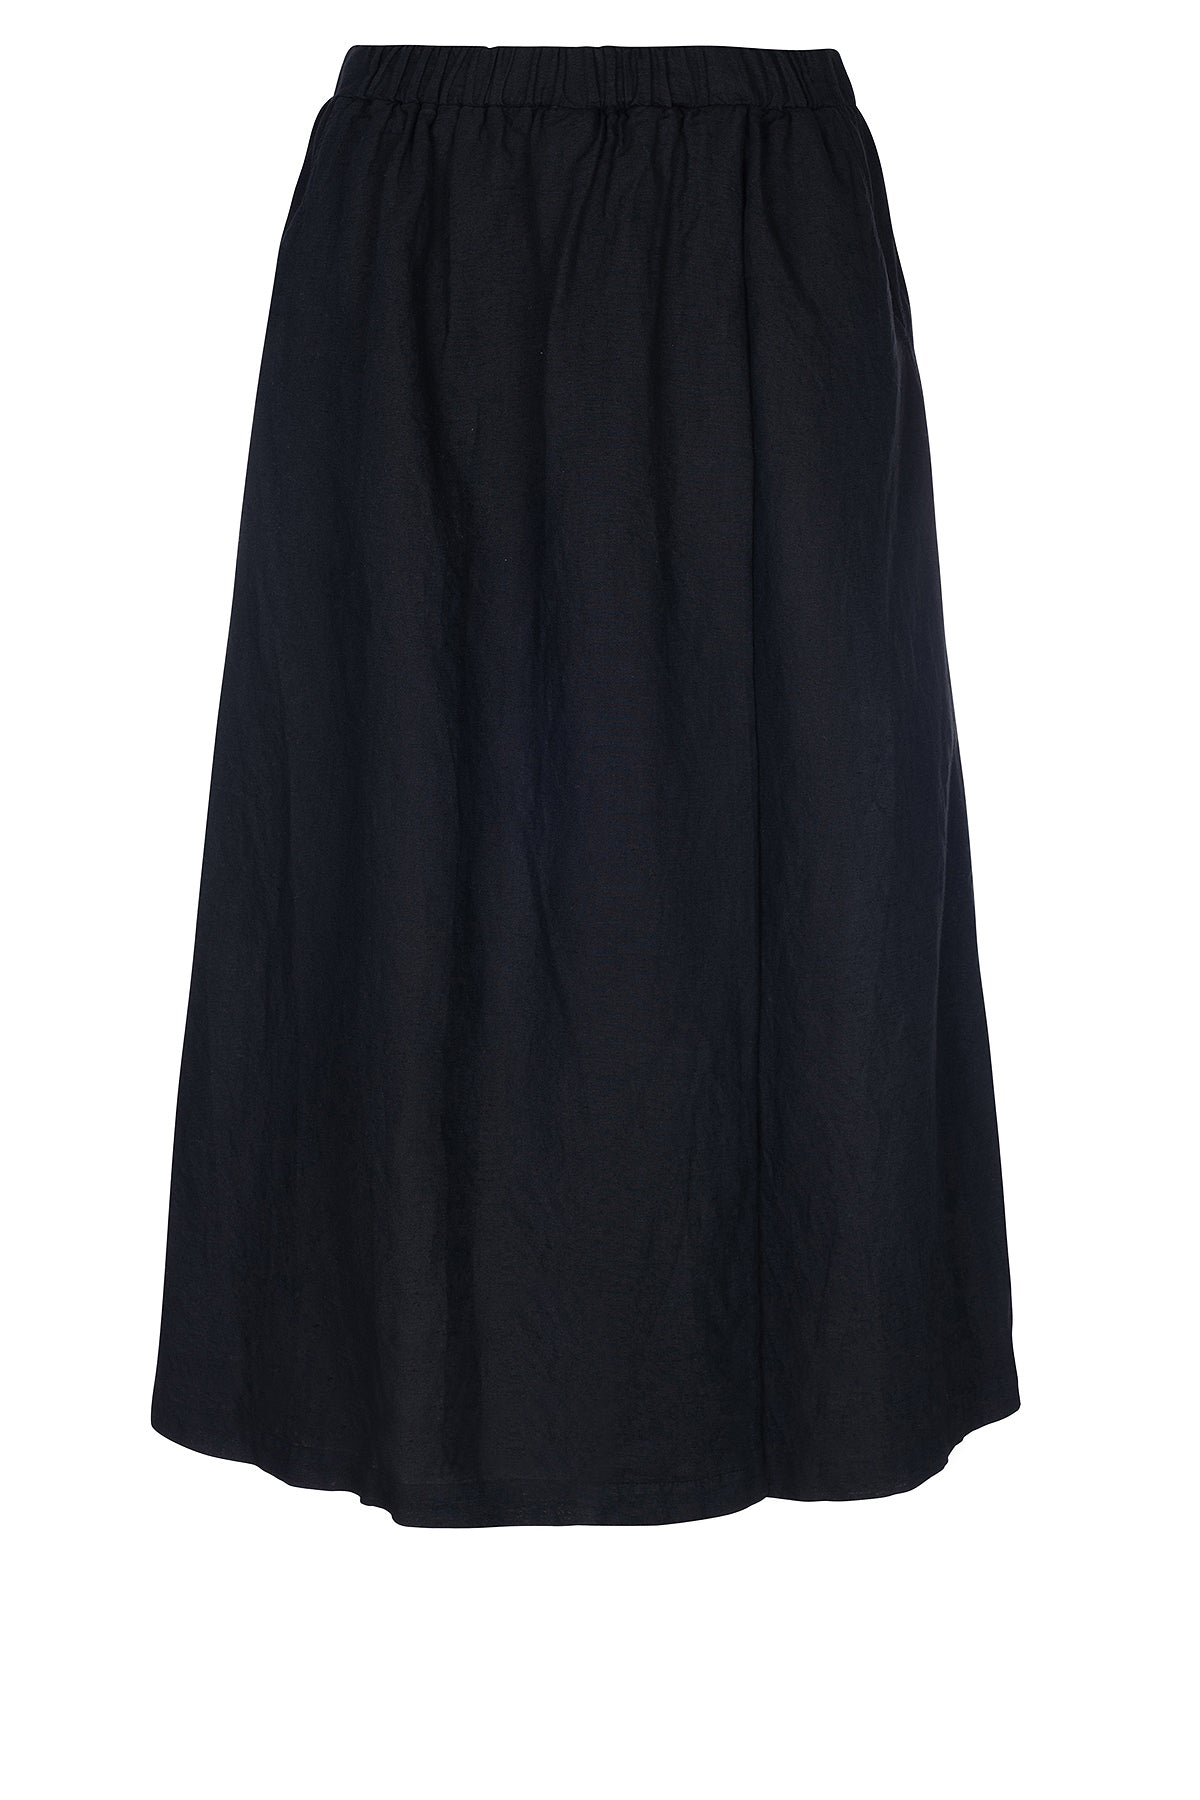 LUXZUZ // ONE TWO Sardia Skirt Skirt 999 Black